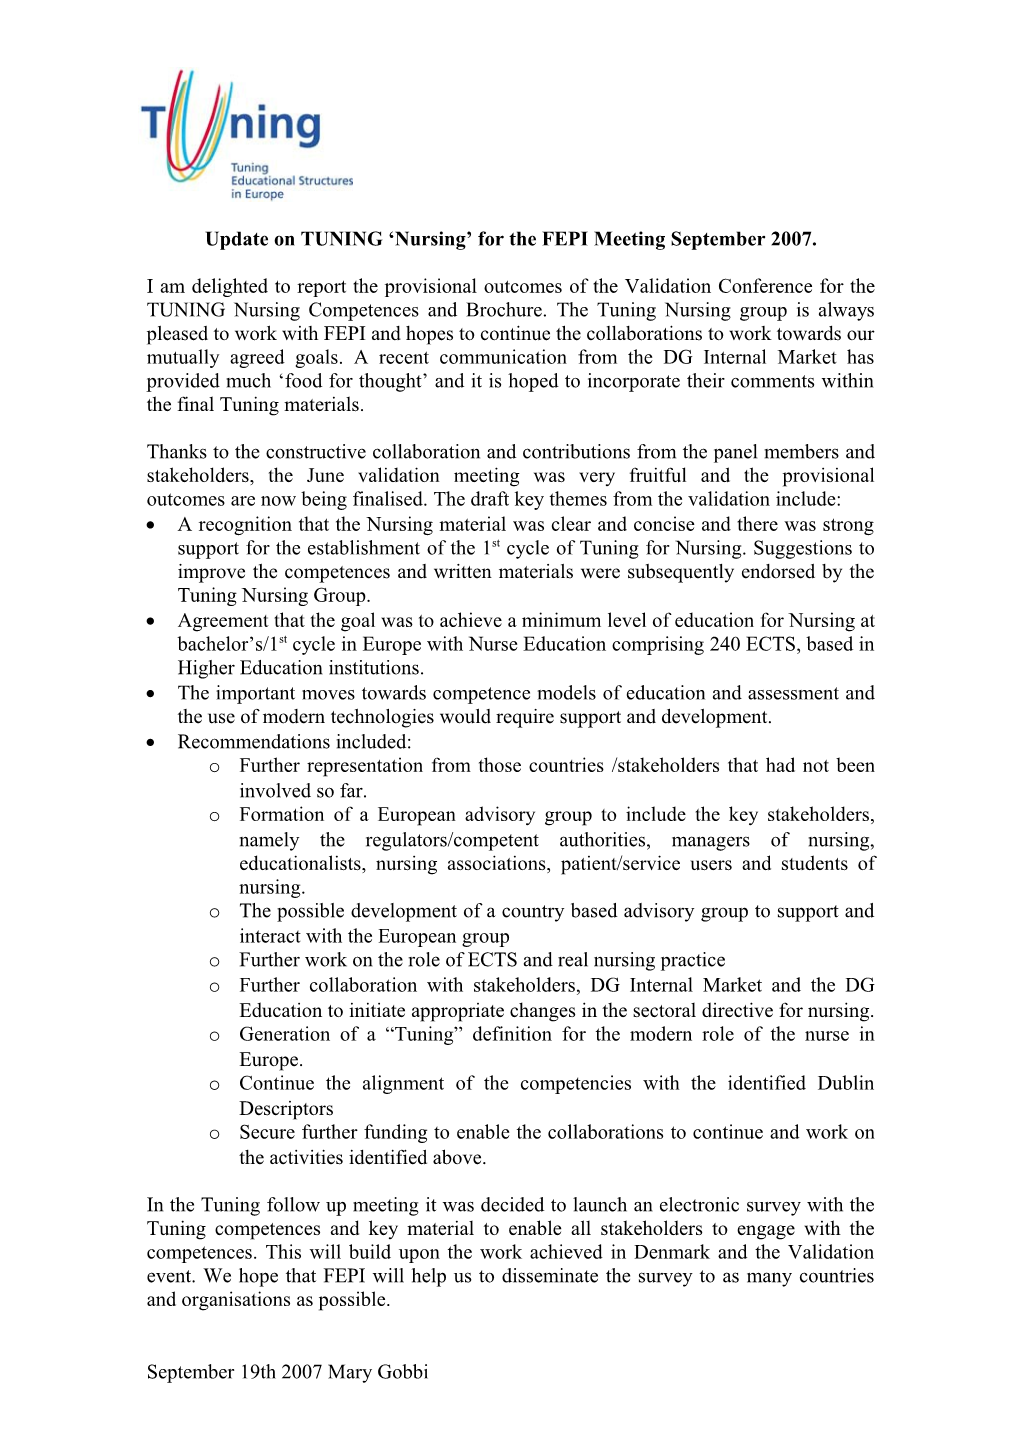 Update on TUNING Nursing for the FEPI Meeting September 2007